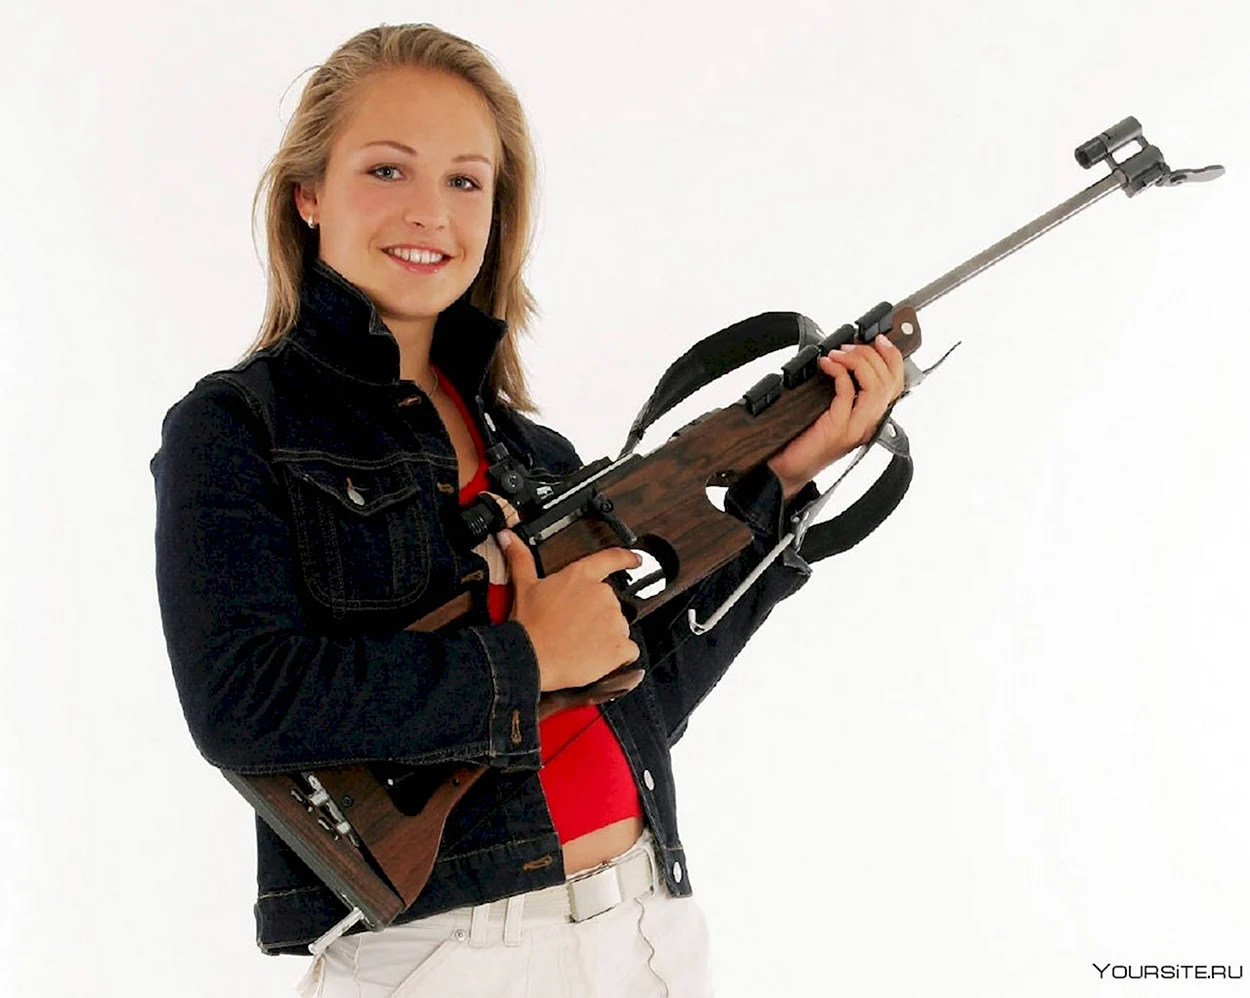 Магдалена Нойнер с винтовкой. Знаменитость